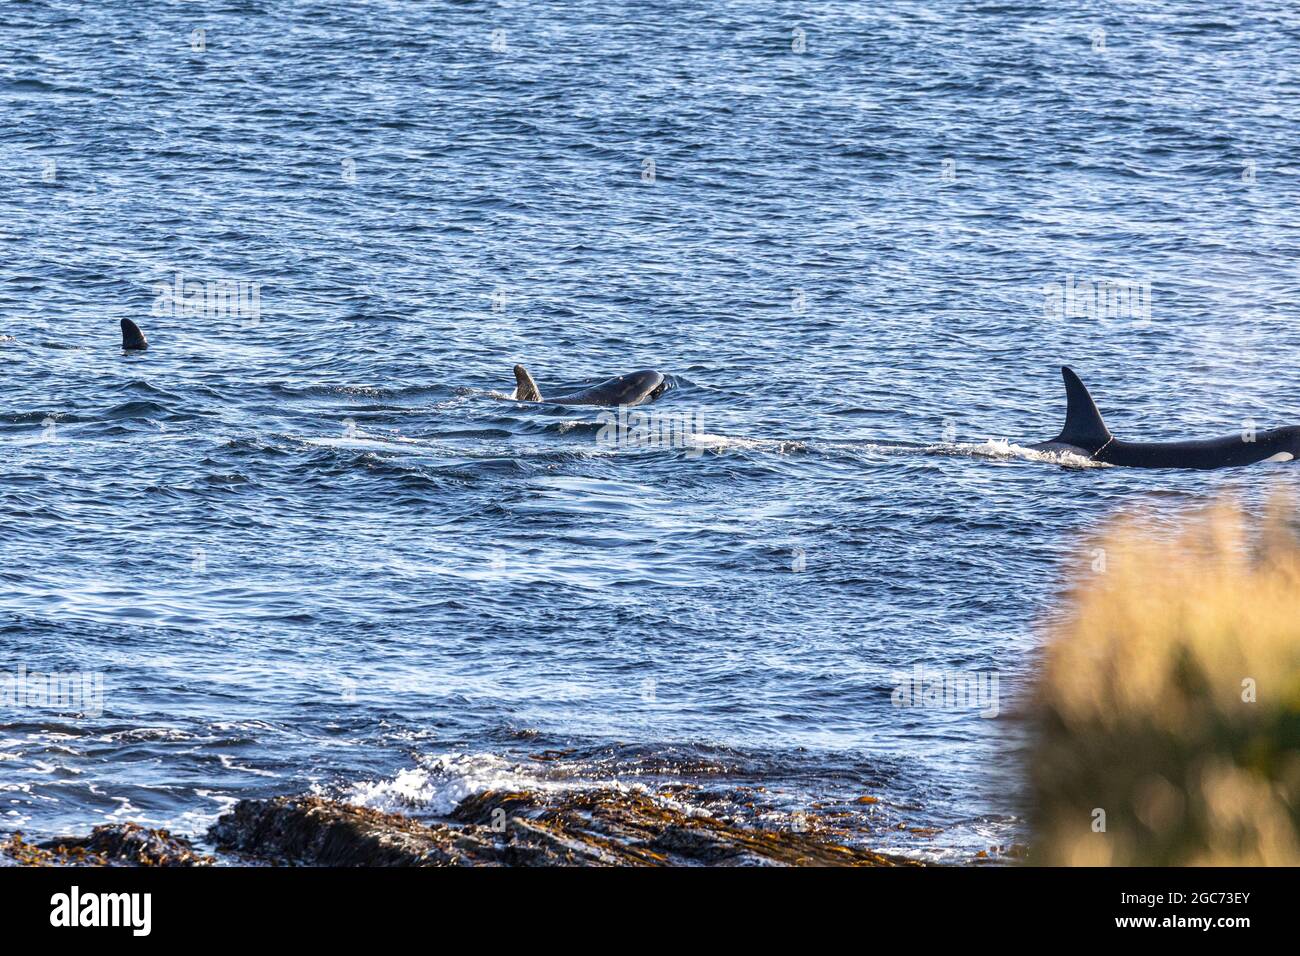 Pack de orka chasse aux épaulards dans la baie de Birsay, Orkney. , pour poissons et phoques . L'orque ou orque (Orcinus orca) est une baleine à dents. Banque D'Images